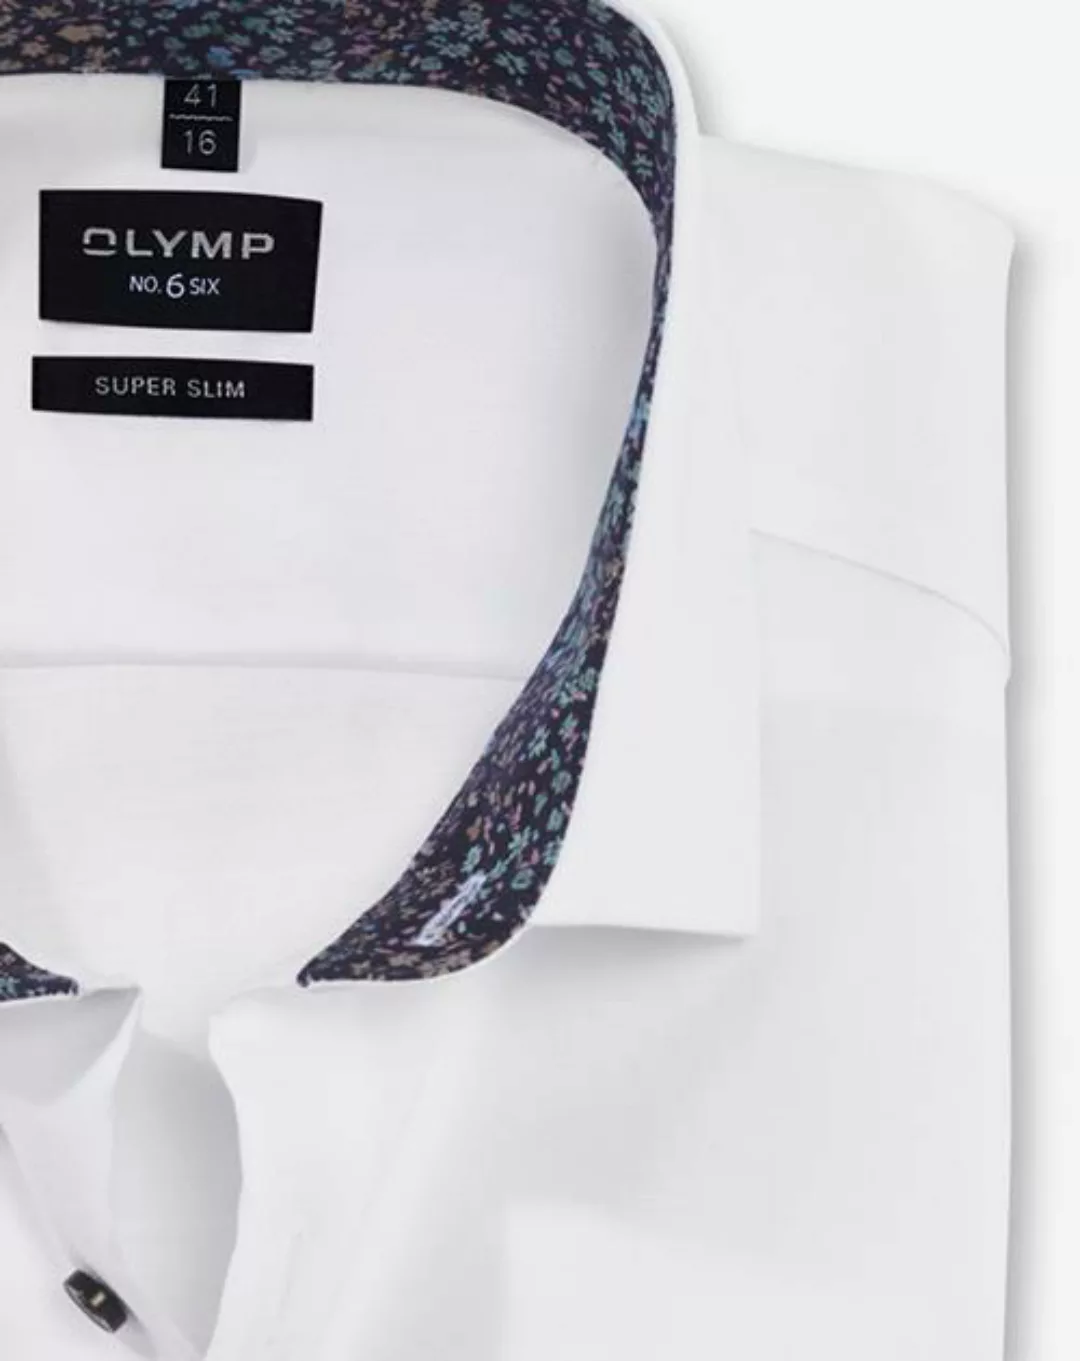 OLYMP Blusenshirt OLYMP Level Five günstig online kaufen